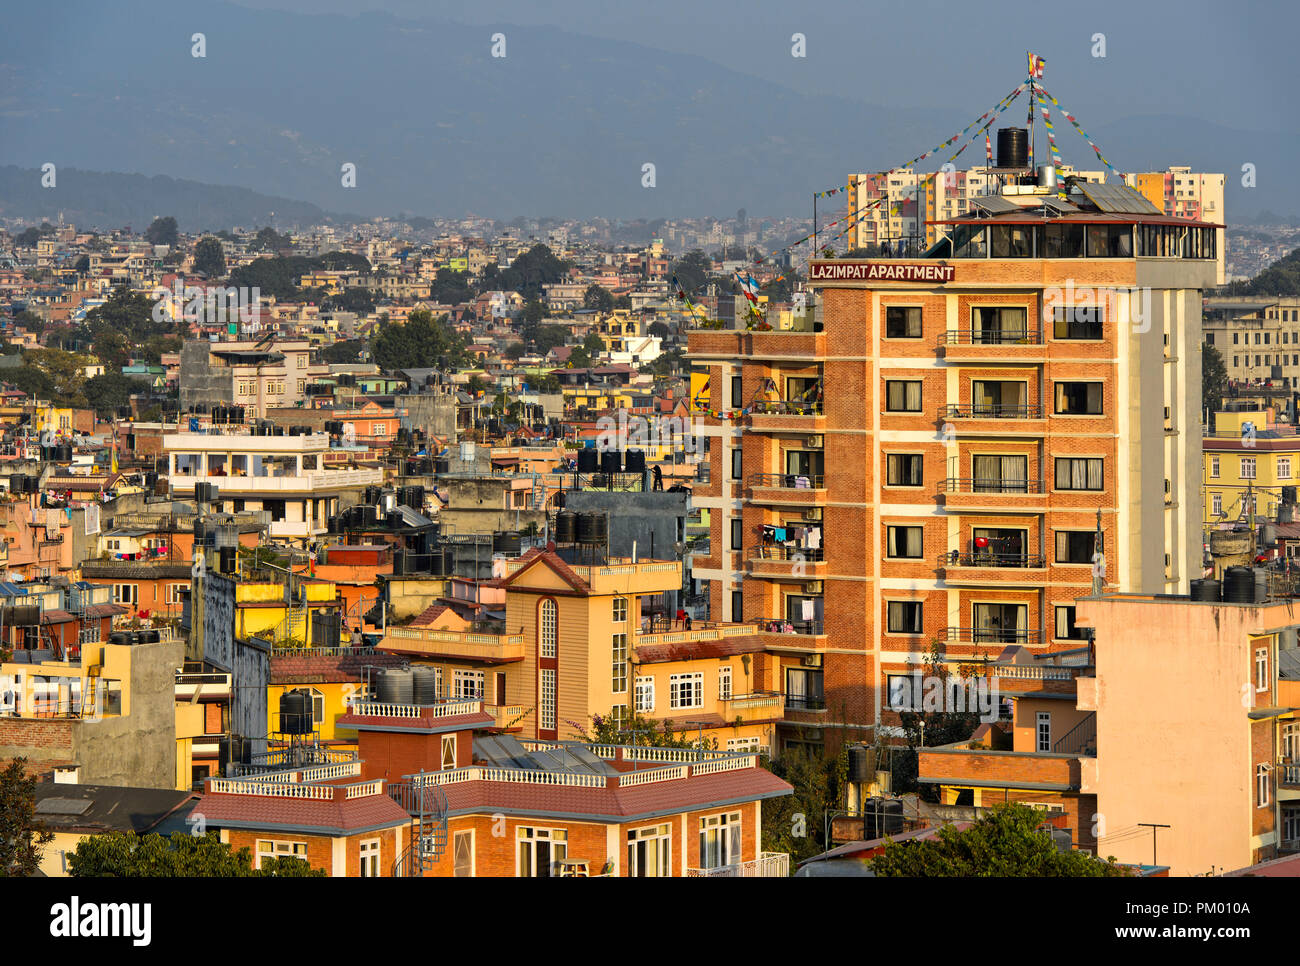 Blick auf die dicht besiedelten Wohngebiet Lazimpat, Kathmandu, Nepal Stockfoto